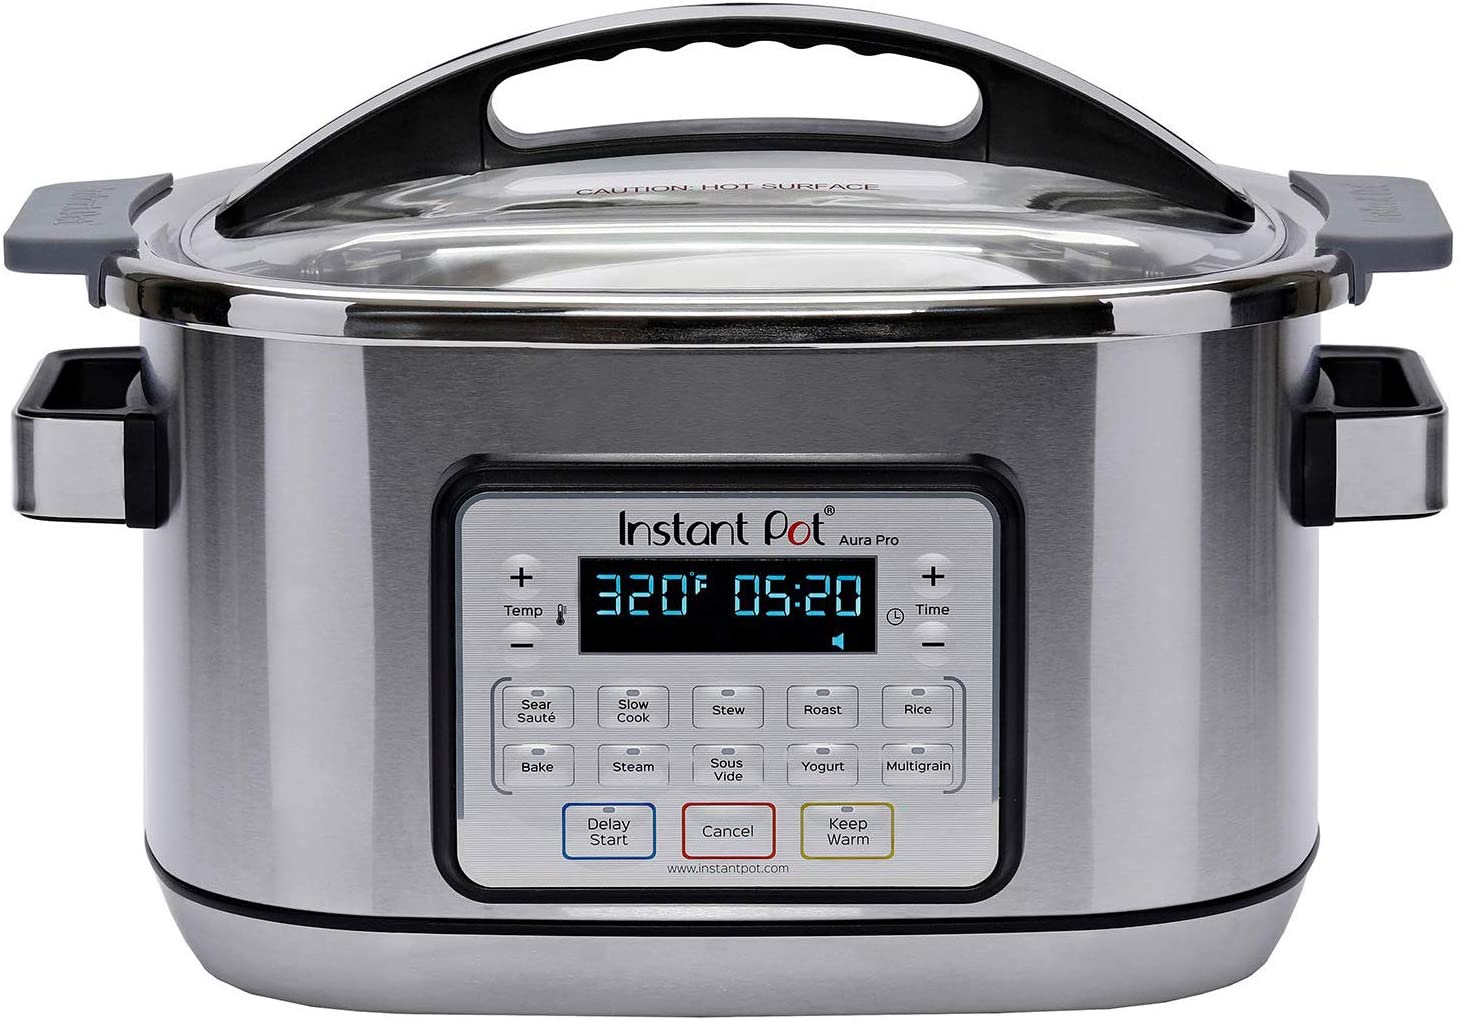 https://kitchenteller.com/wp-content/uploads/2021/03/Instant-Pot-Aura-Pro-Multi-Use-Programmable-Slow-Cooker-with-Sous-Vide-8-quart-Silver-AURA-PRO-6QT-review-front-view.jpg